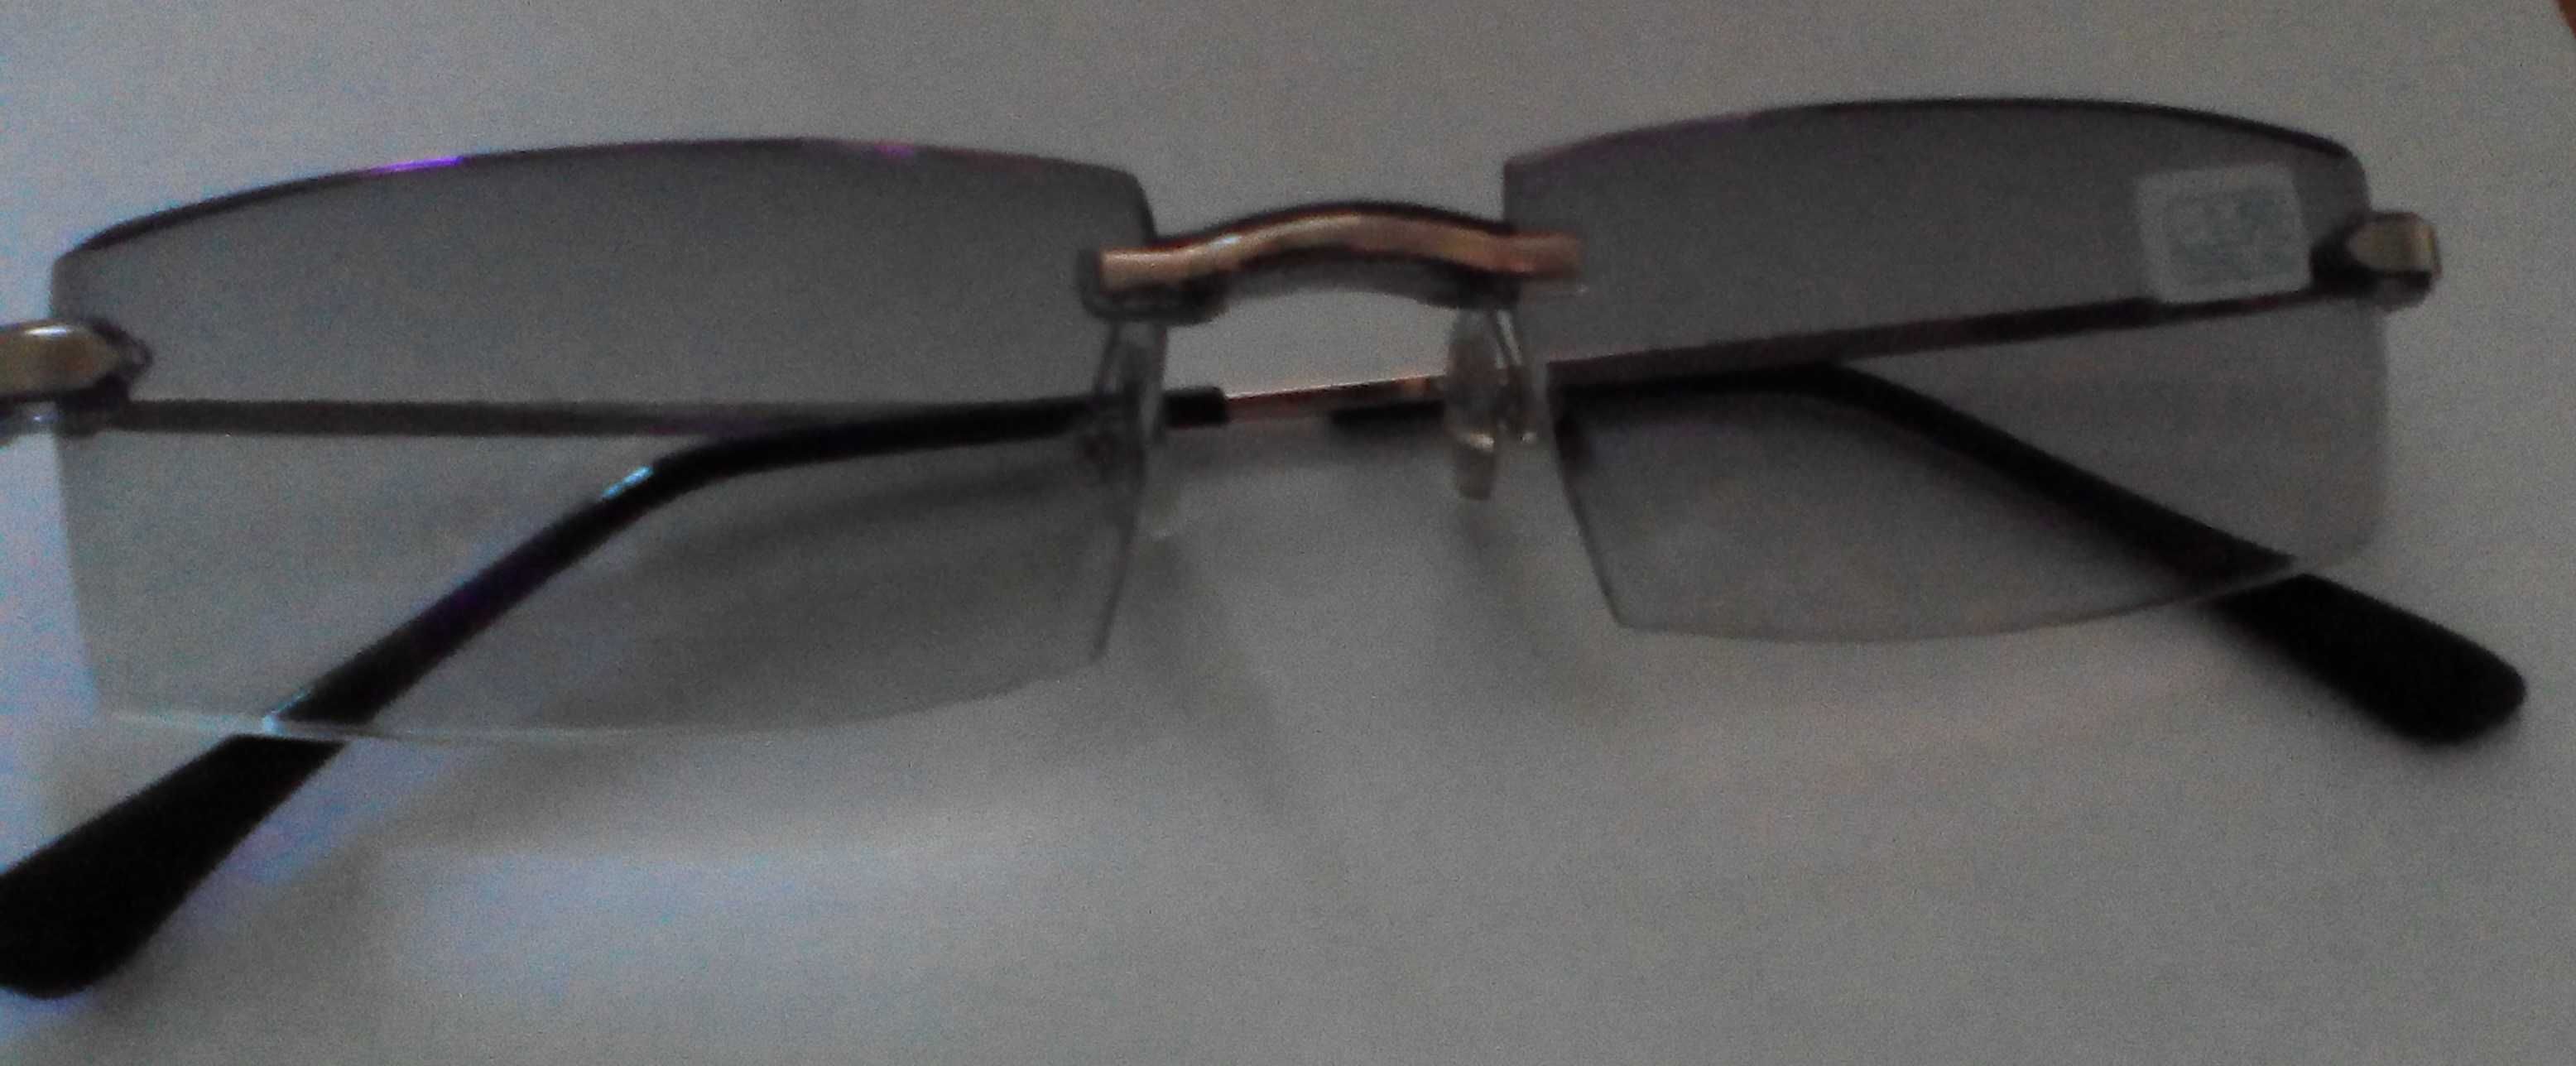 Очки для защиты глаз при работе за компьютером, телевизором